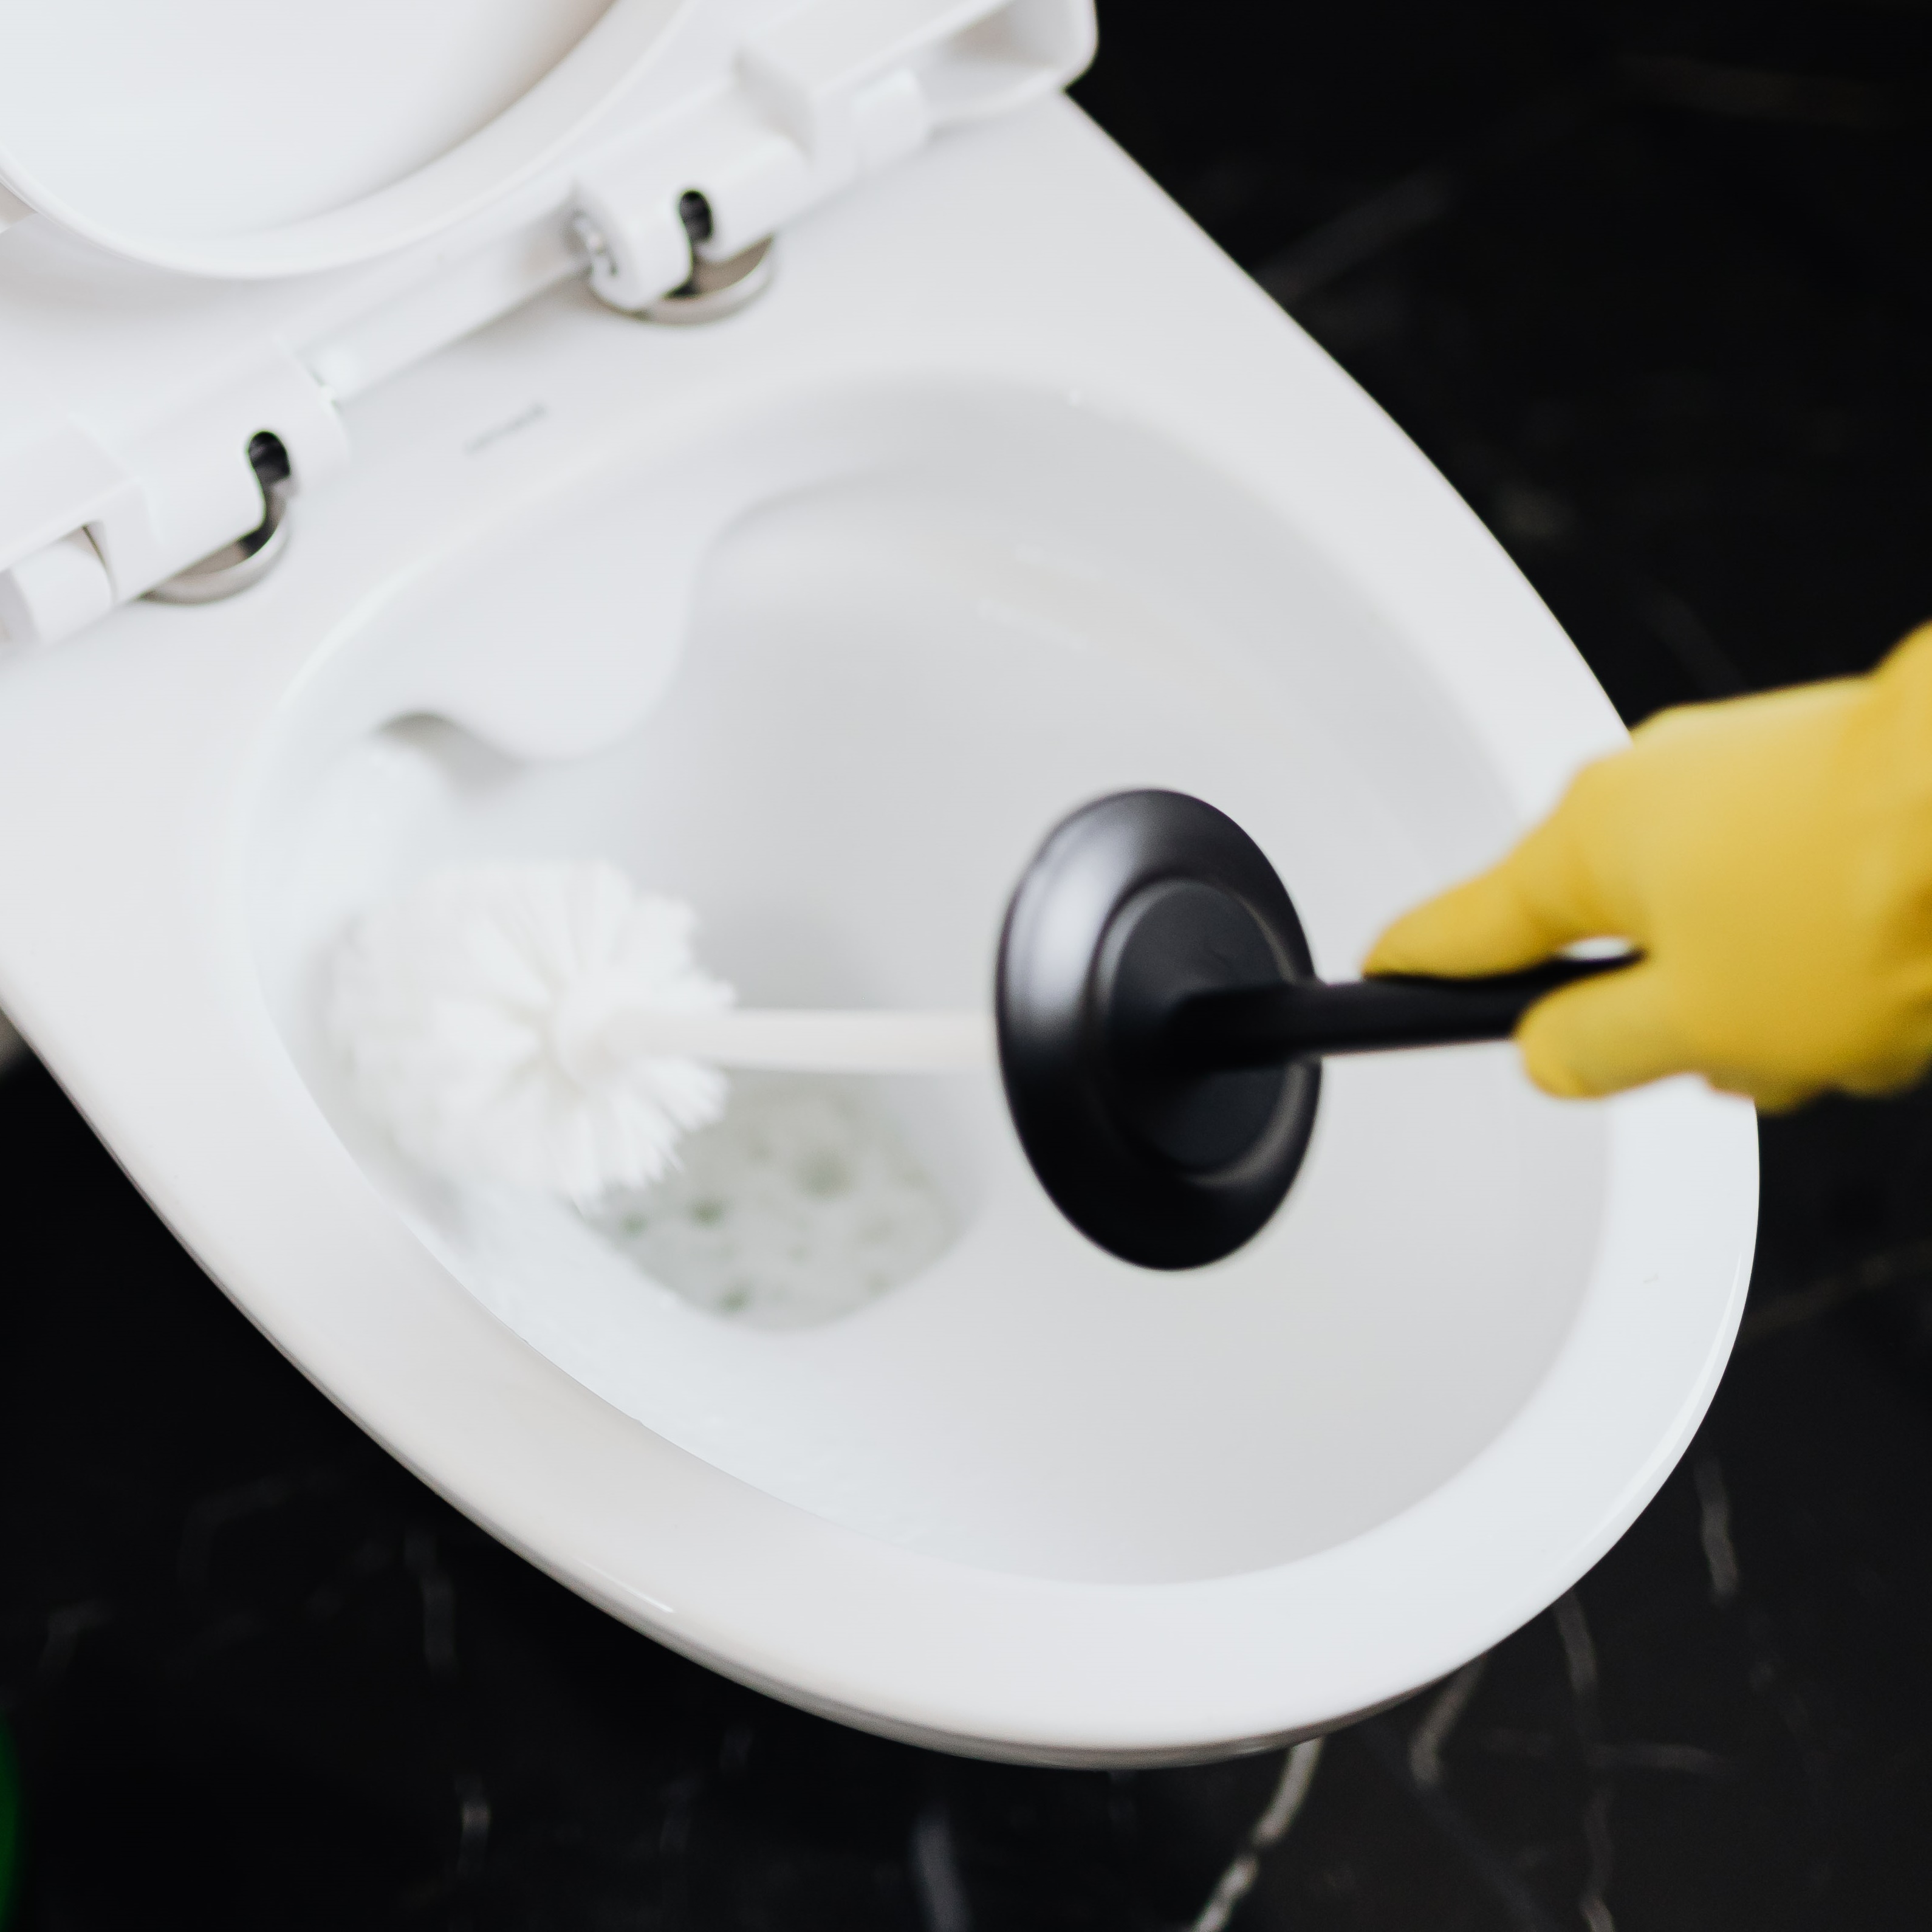 Powierzchnia czyszczona preparatem Septima Sanitar ŻEL / Pureco